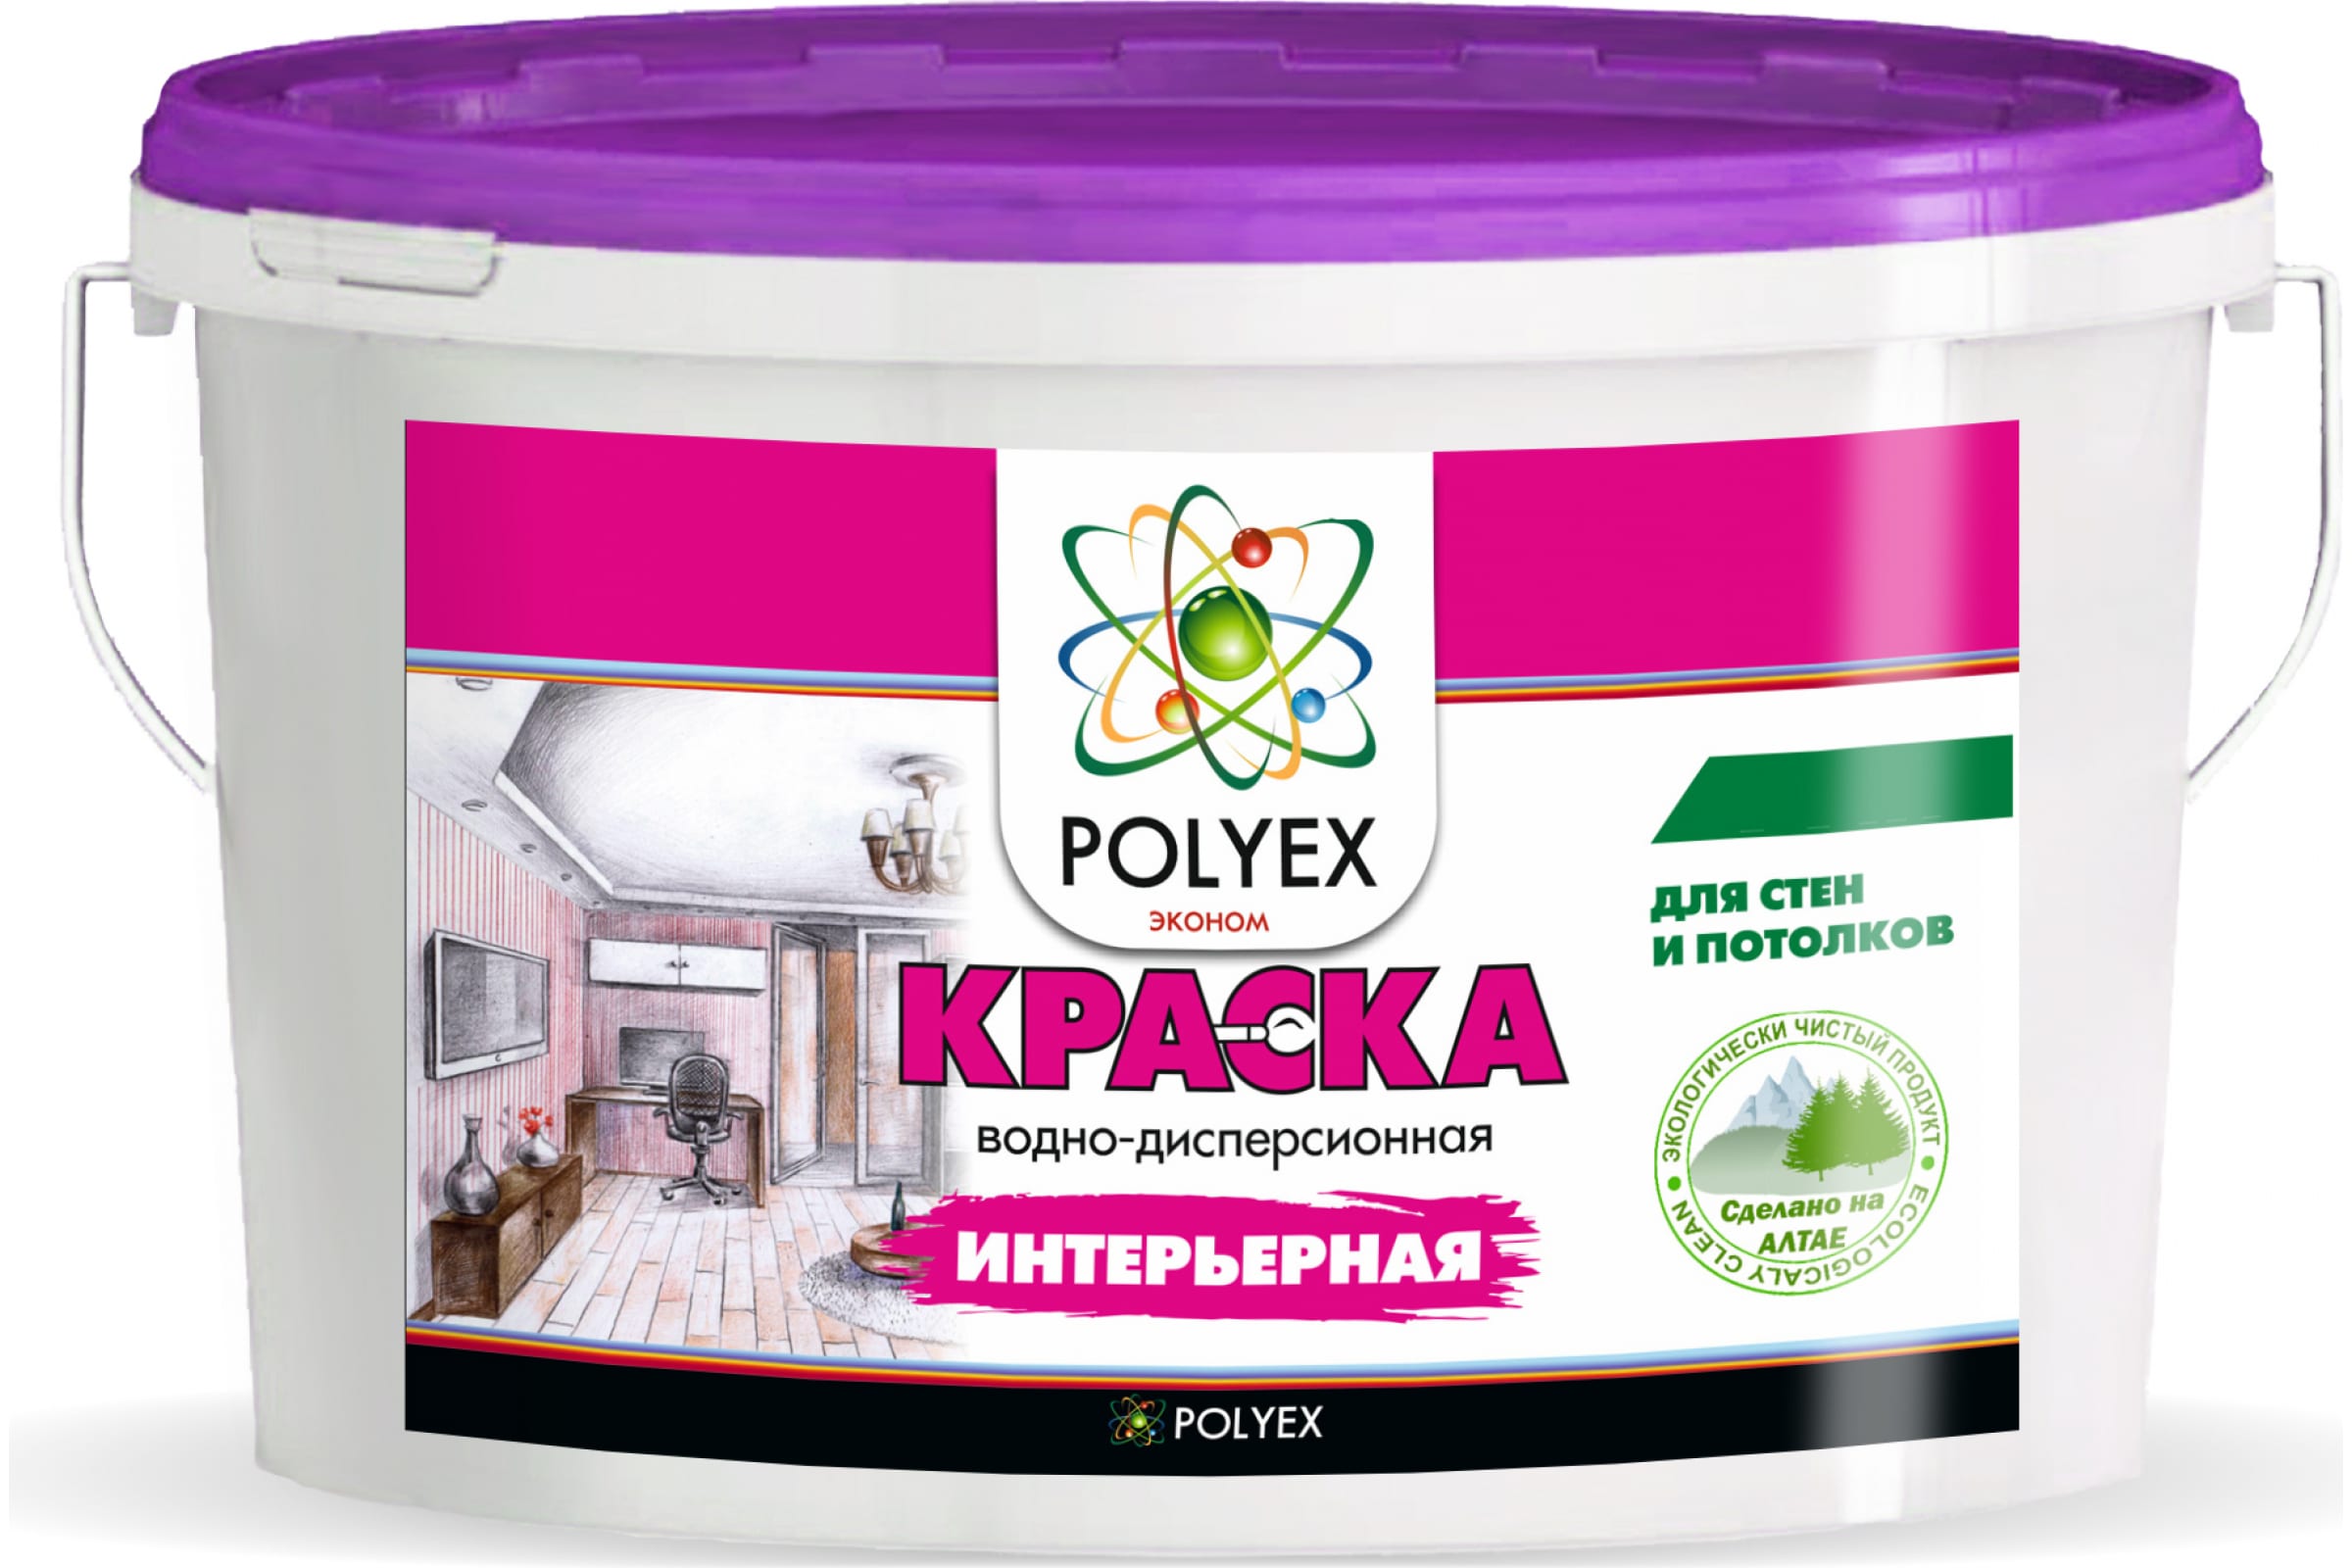 Polyex Краска для стен и потолков интерьерная 7кг 1шт УТ-00006916